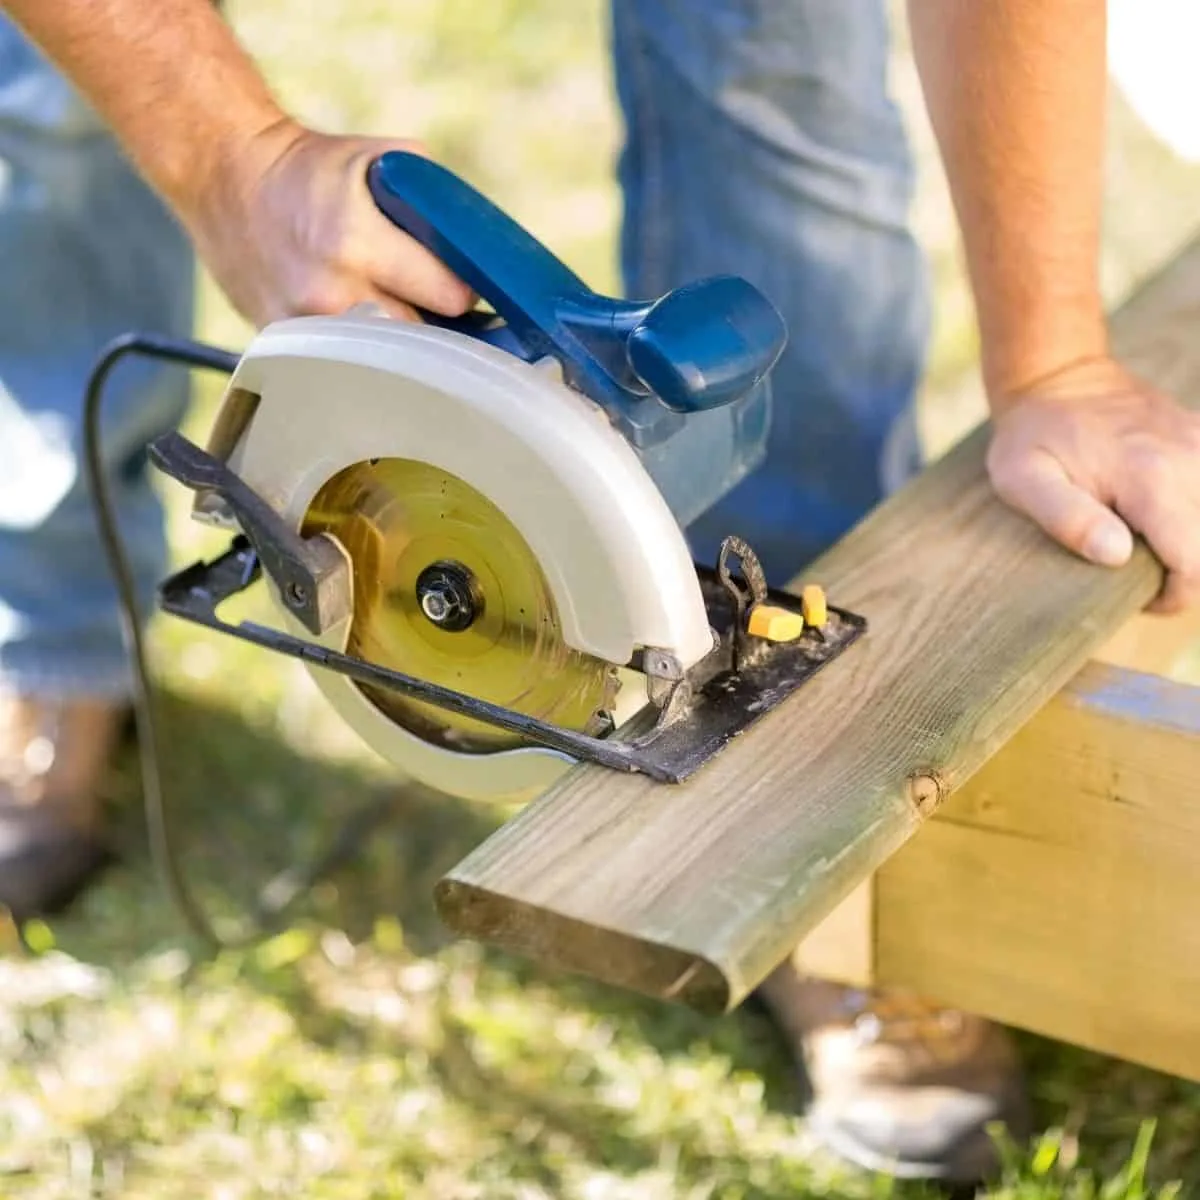 cutting a deck board with a circular saw